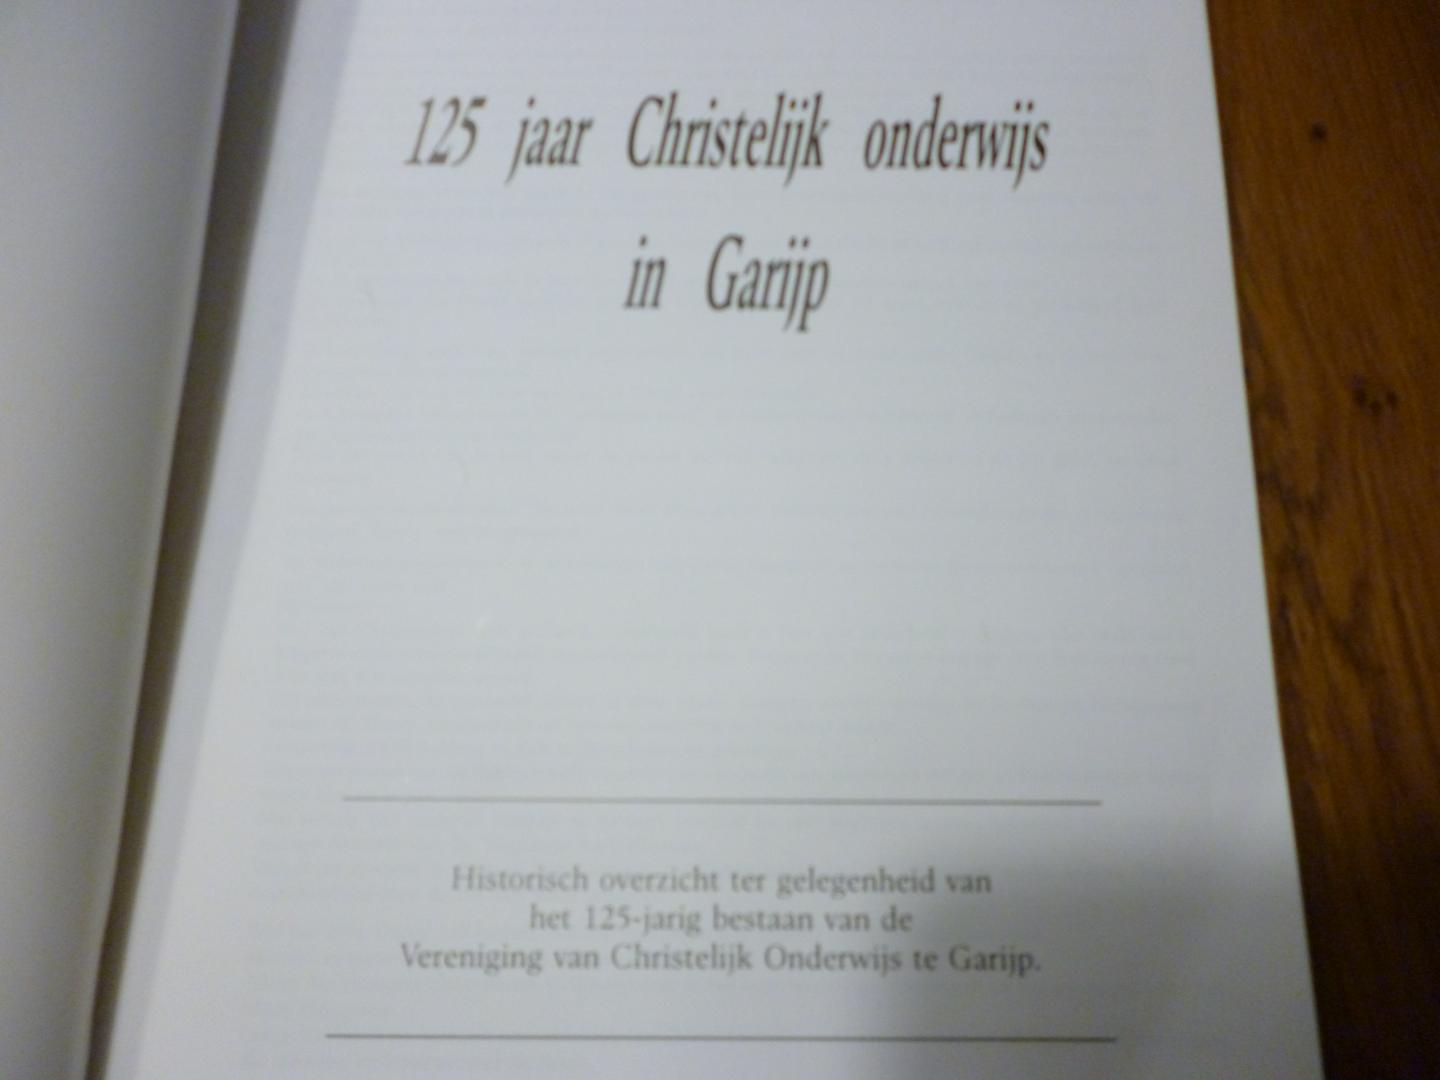  - 125 jaar Christelijk onderwijs in Garijp